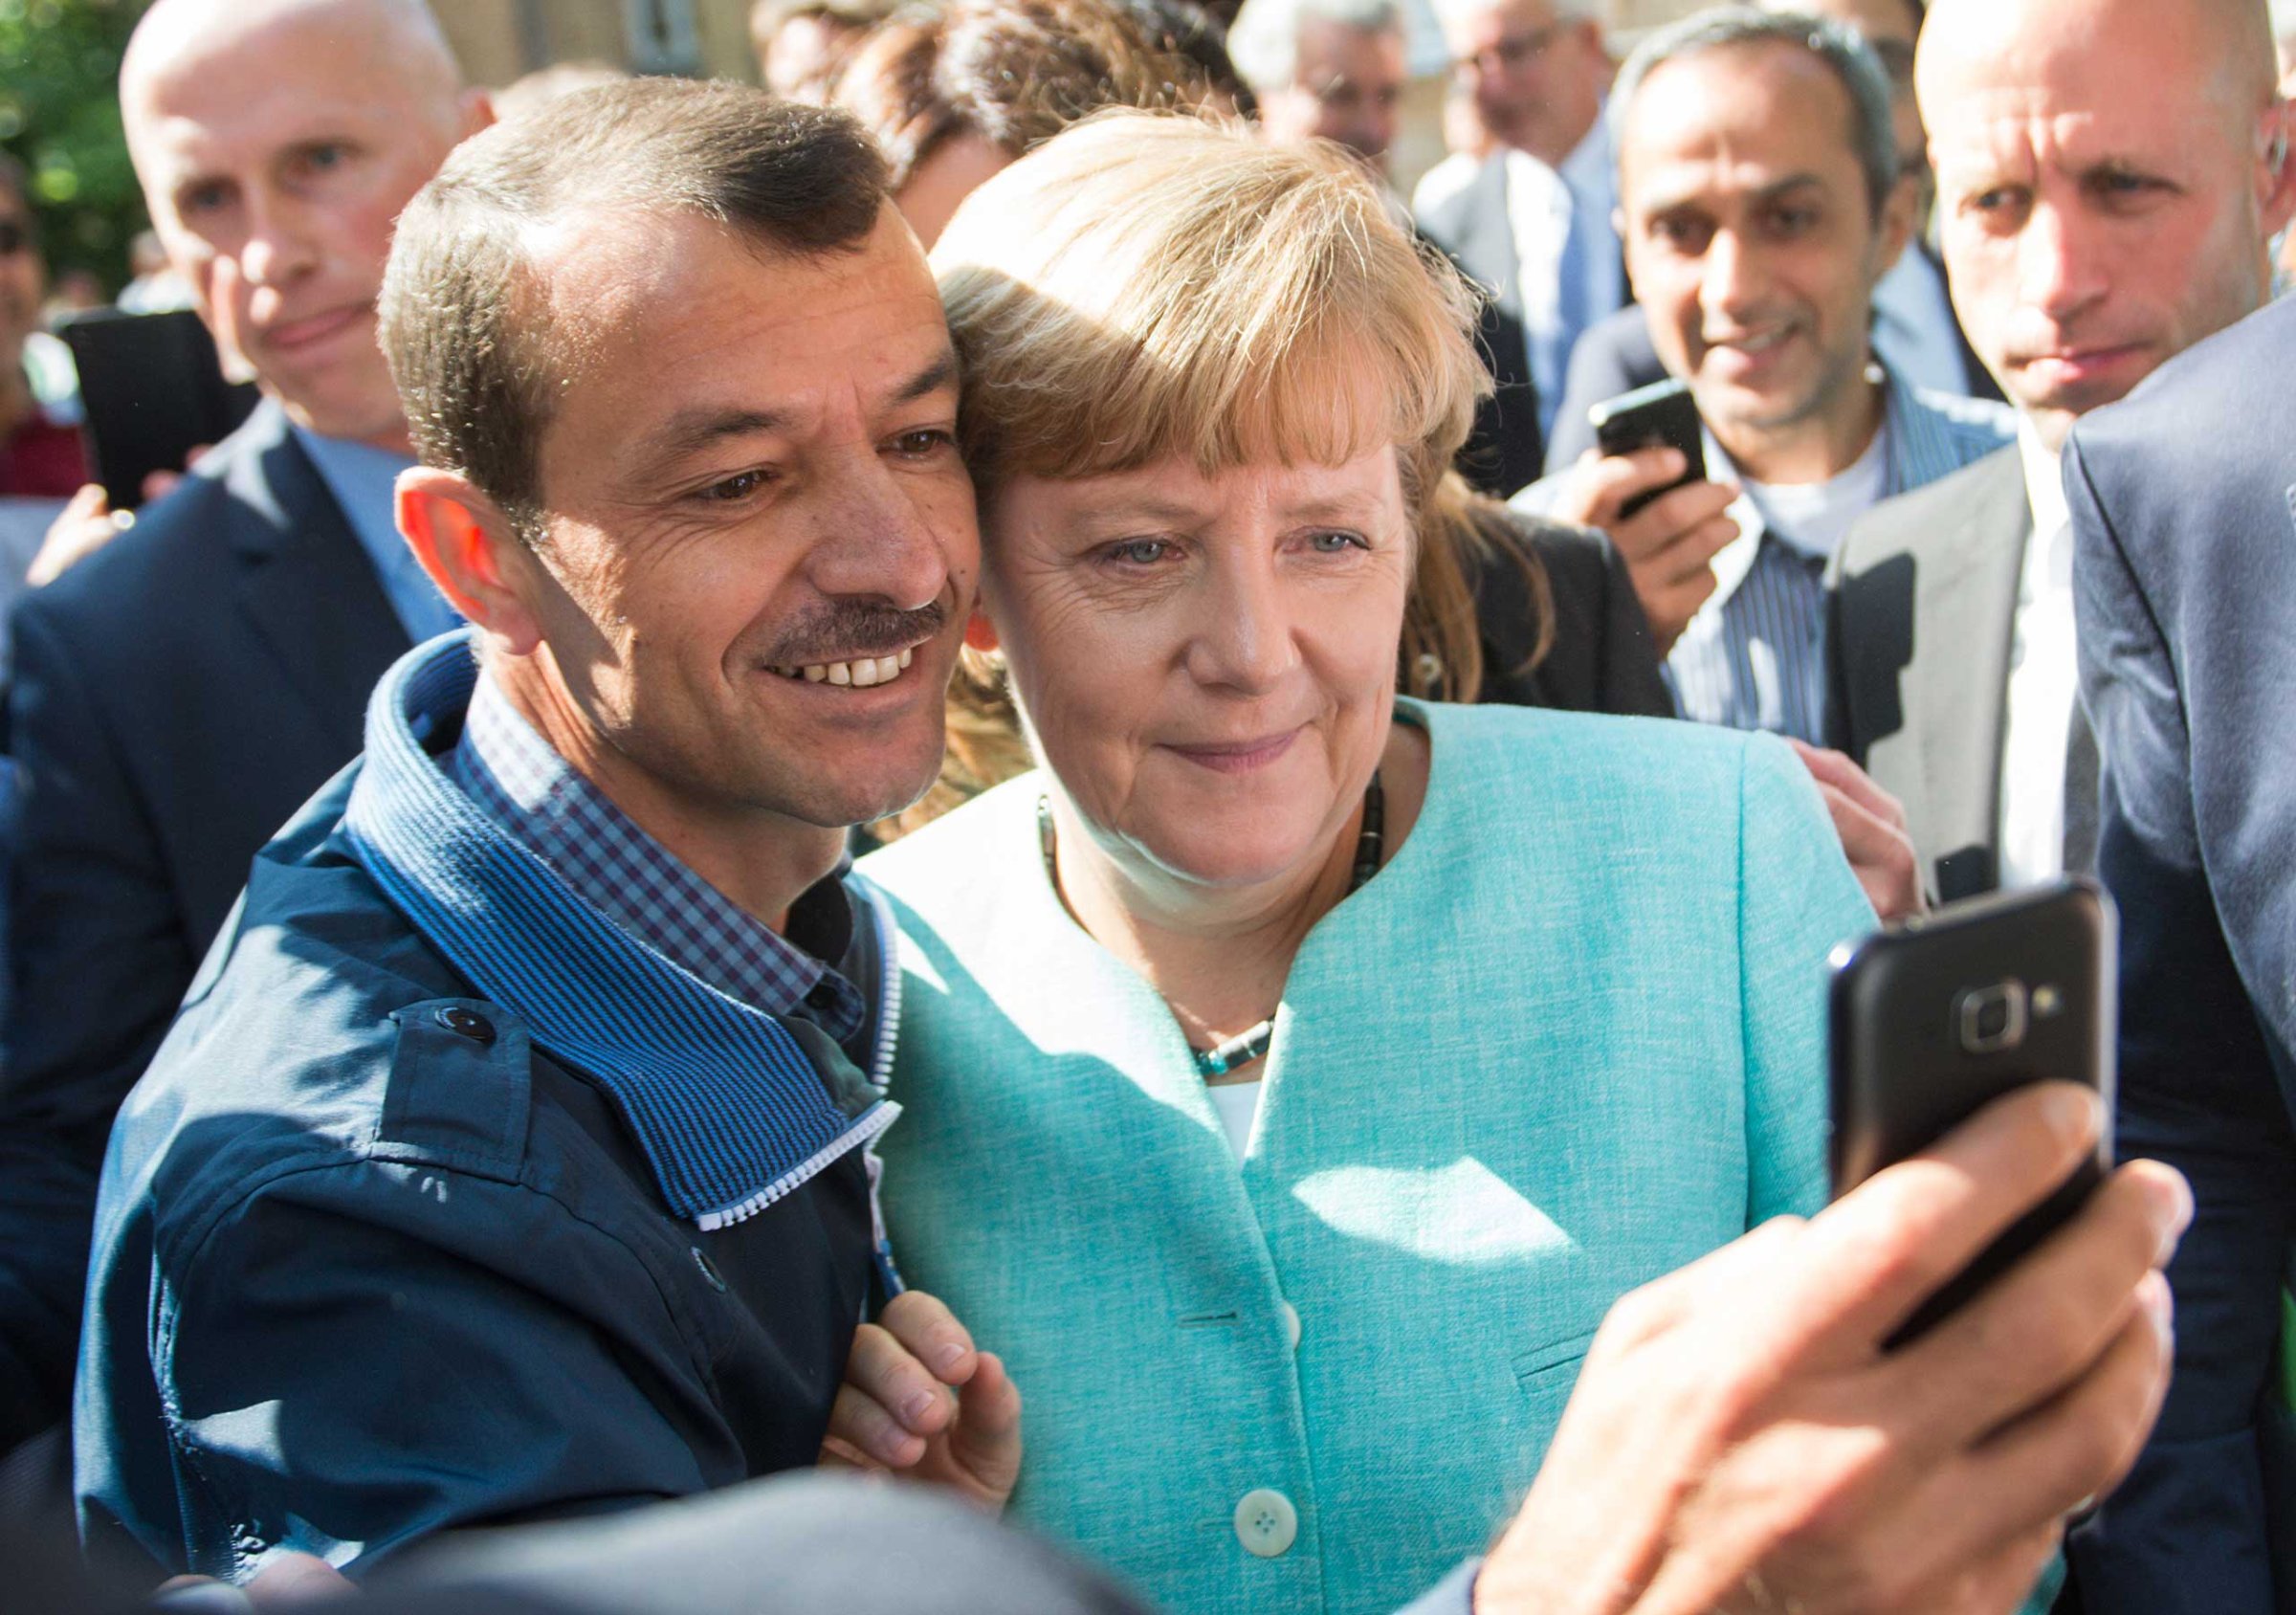 Merkel visits refugee shelter